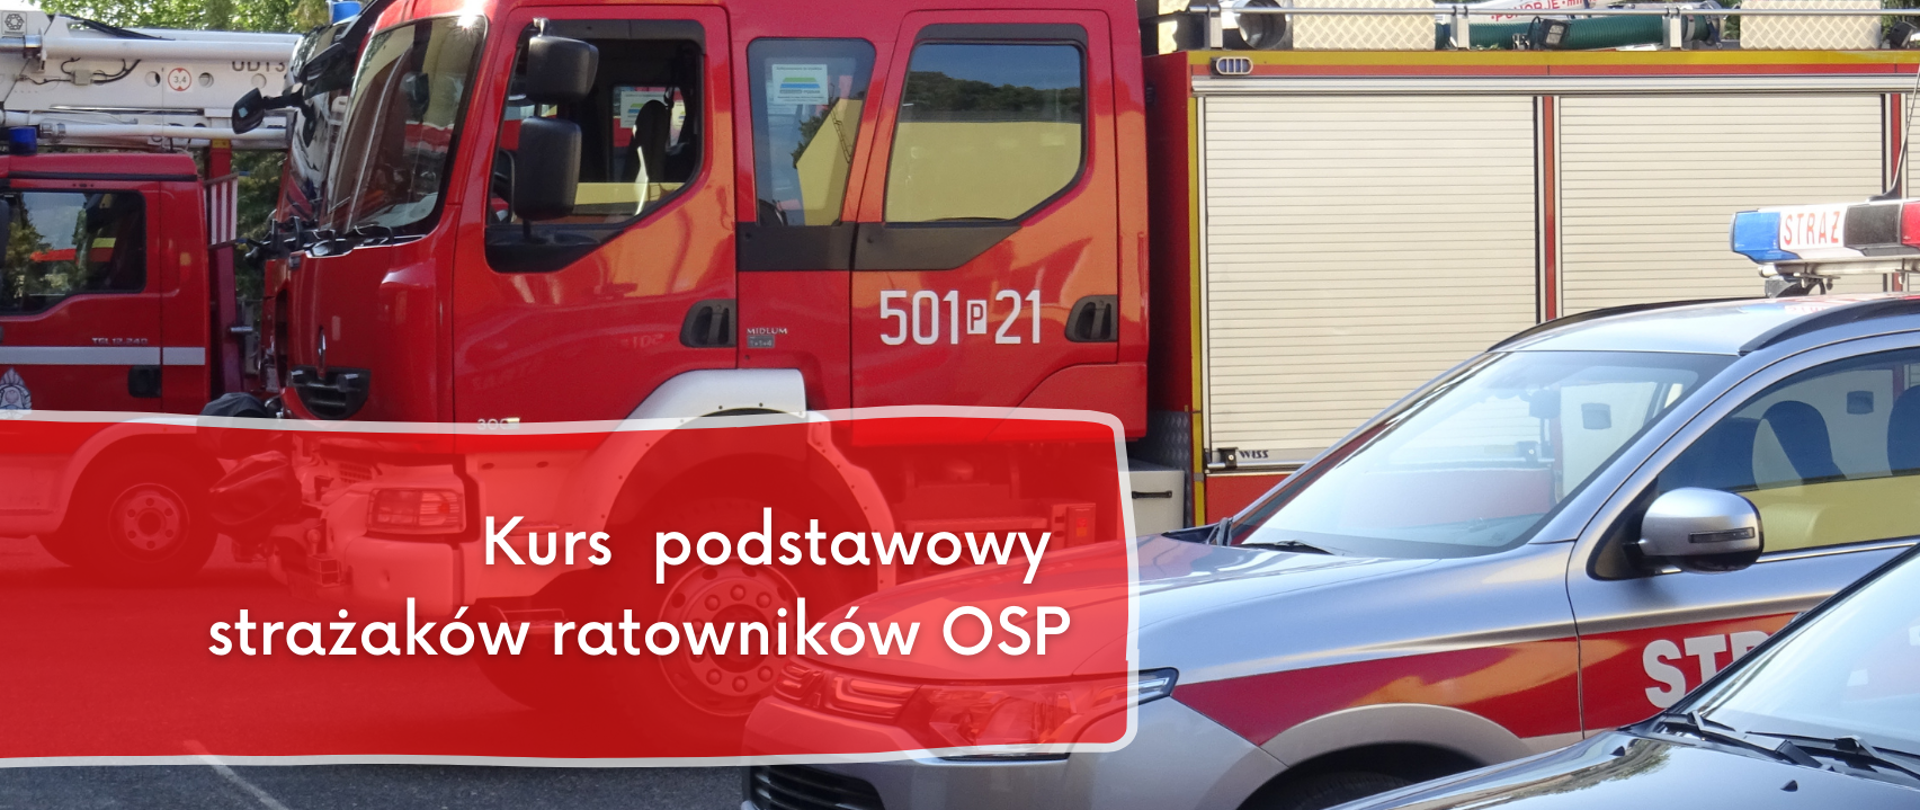 Kurs podstawowy strażaków ratowników OSP